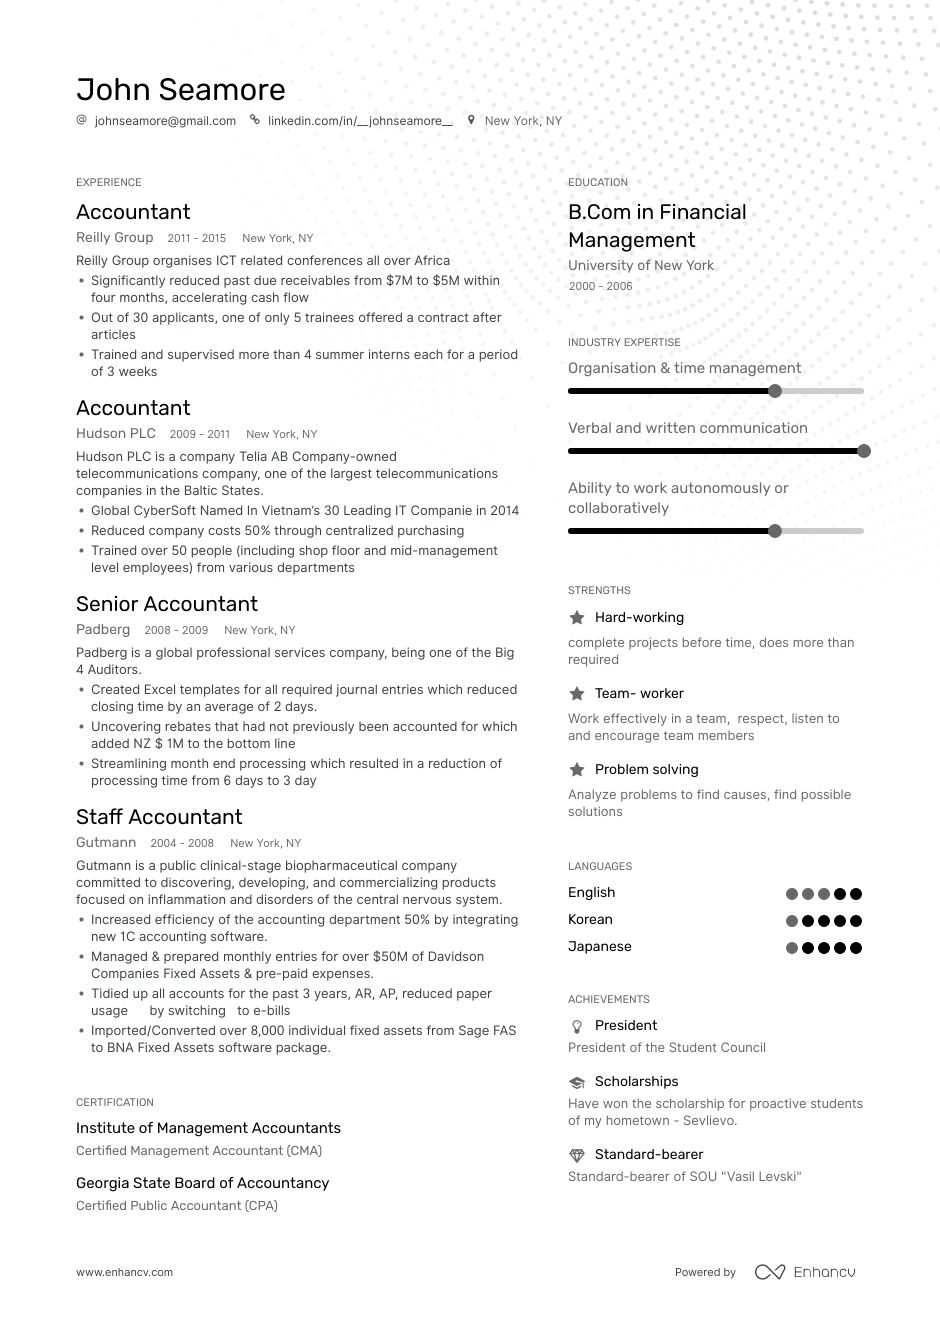 Accountant Resume Sample from enhancv.com